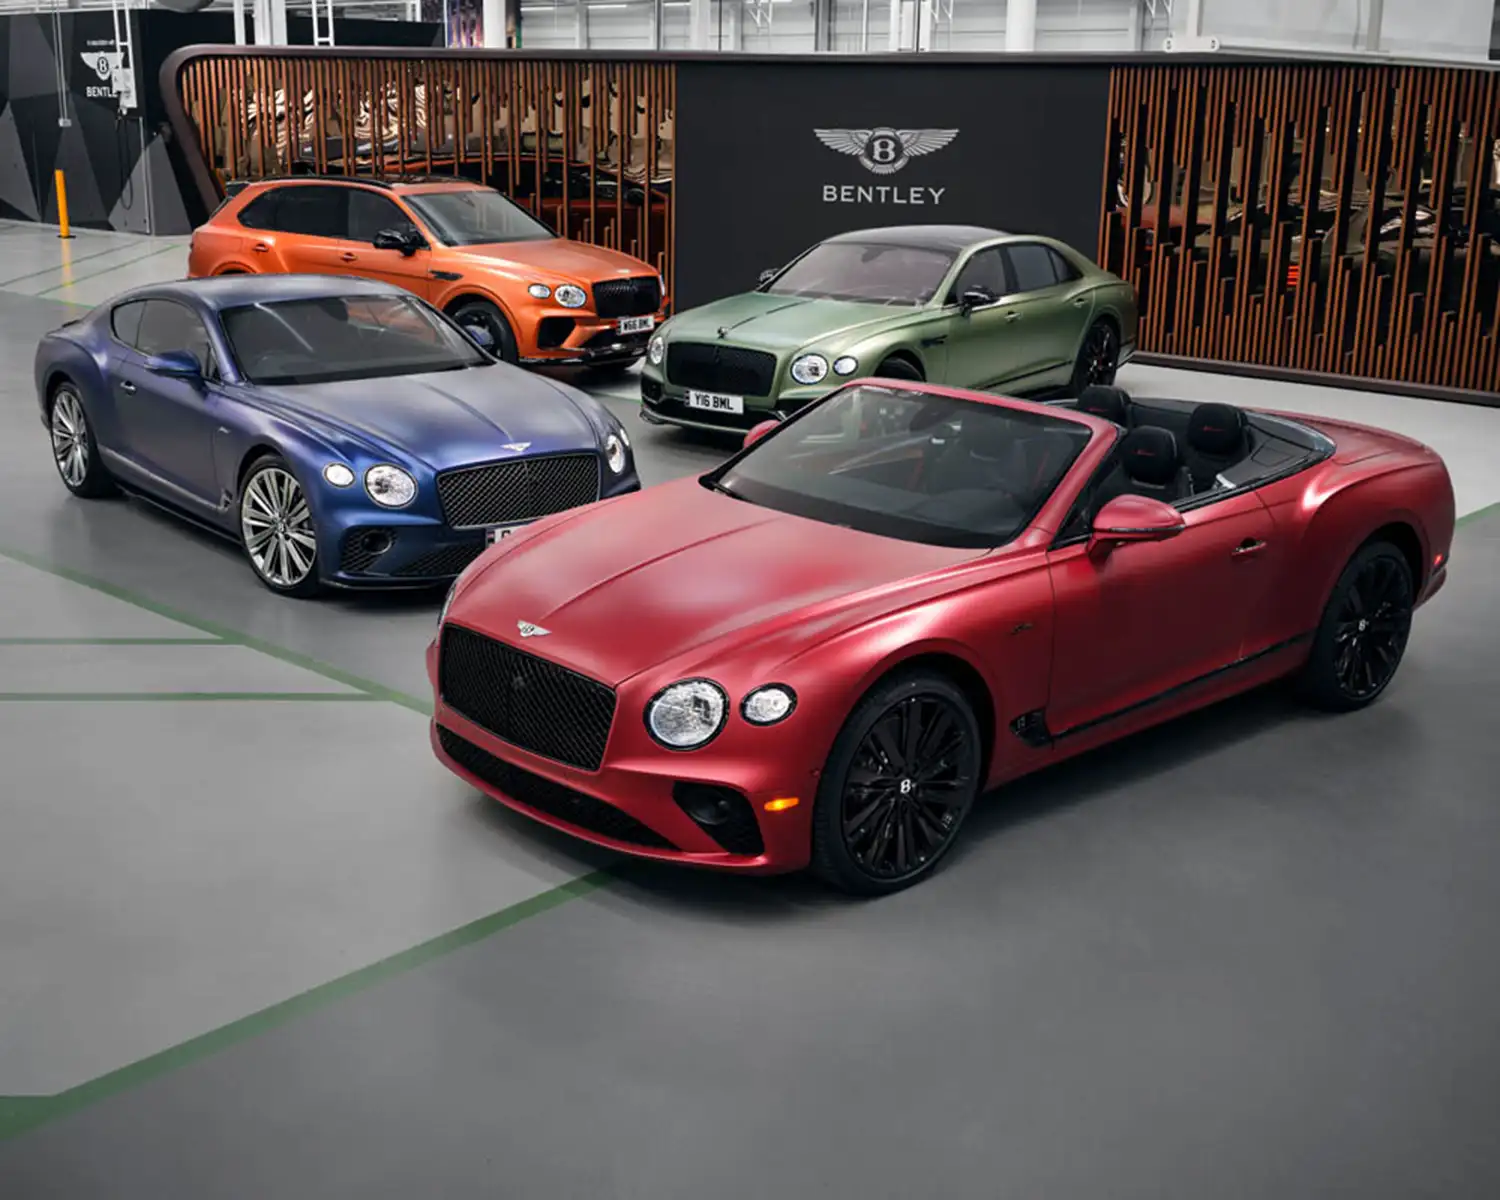 بنتلي توسع مجموعة ألوانها لتمنح العملاء مزيداً من الخيارات لتخصيص سياراتهم